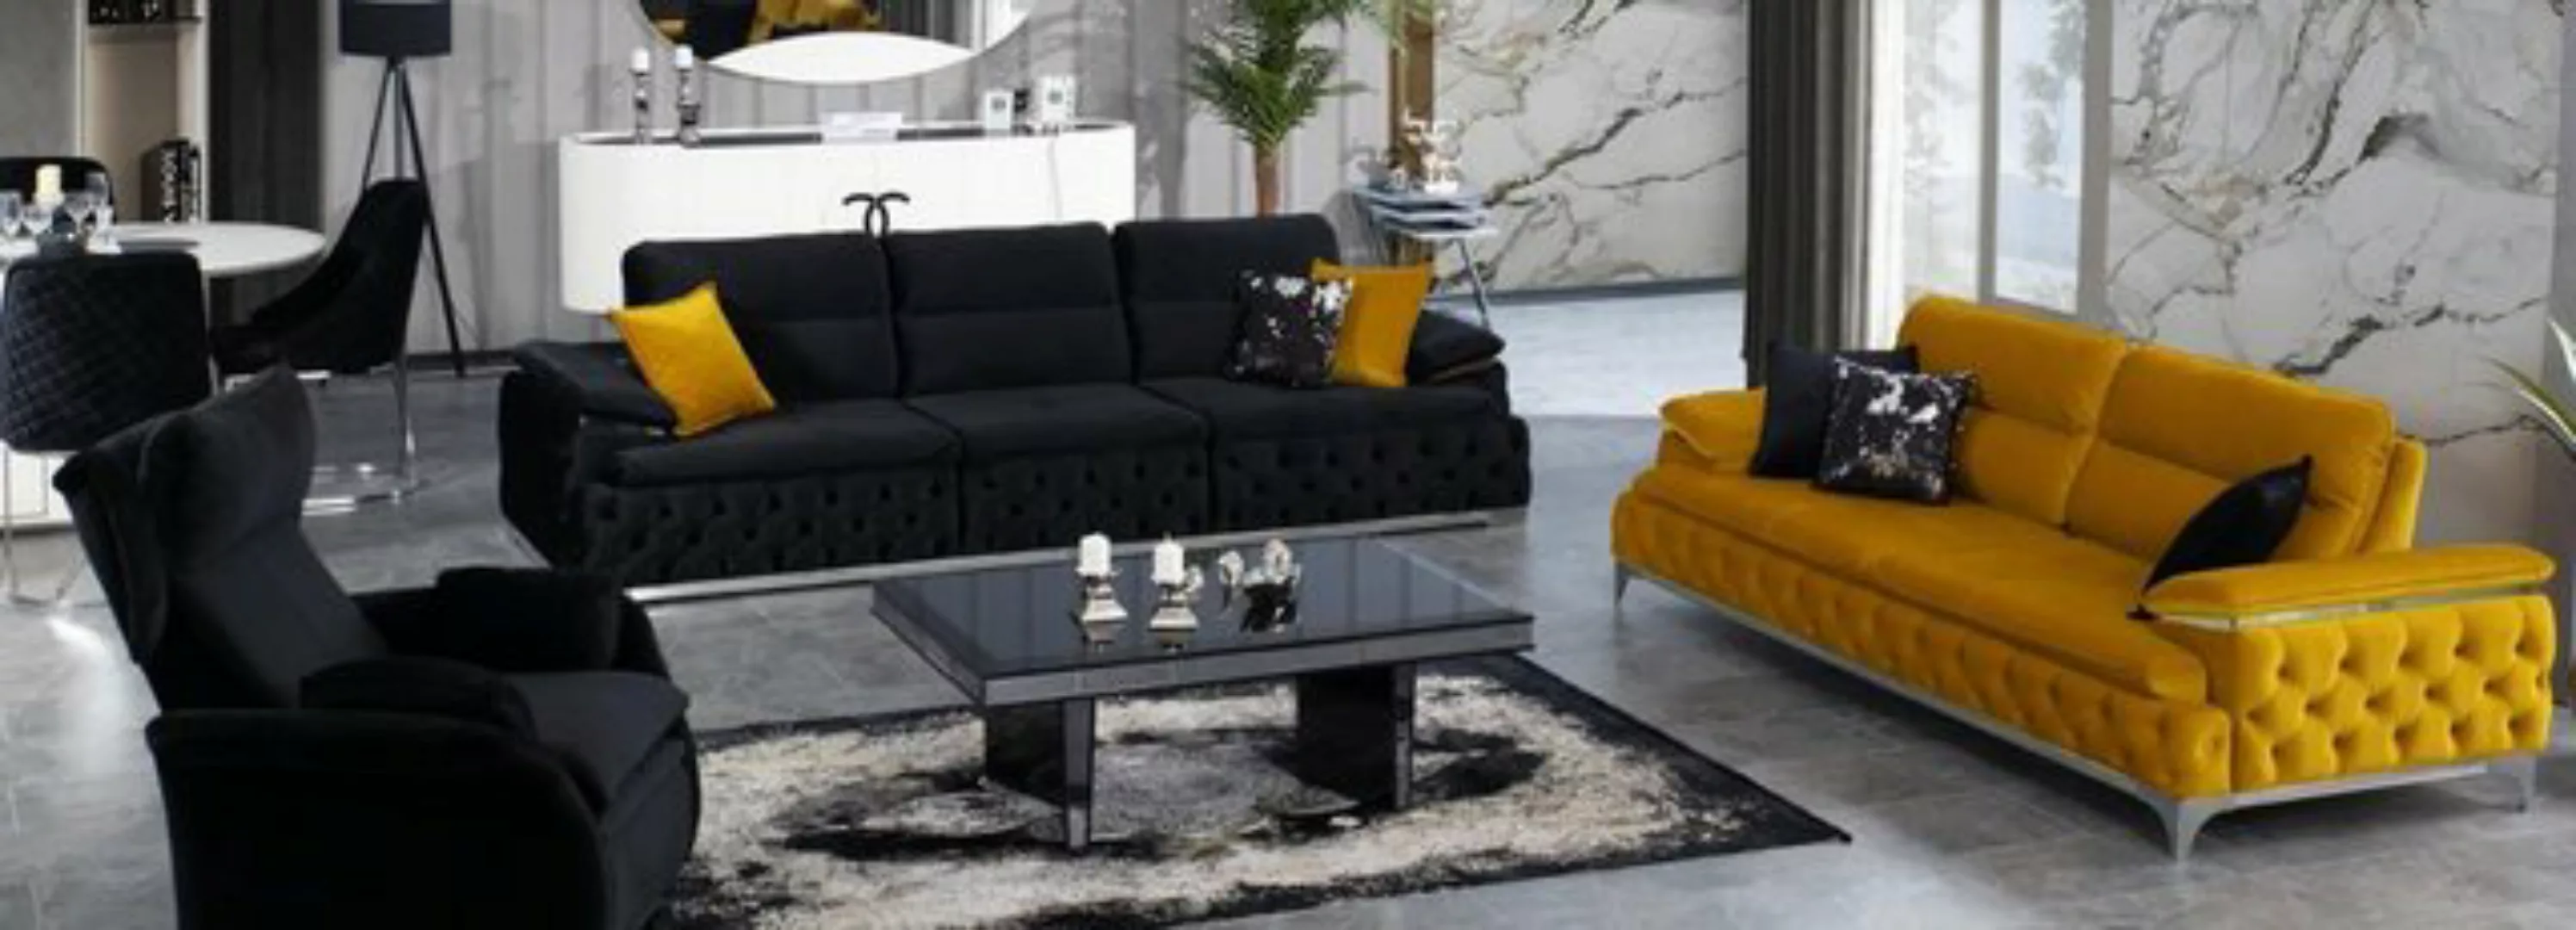 JVmoebel Sofa Sofagarnitur 3+3 Sitzer Set Design Sofas Polster Couchen Stof günstig online kaufen